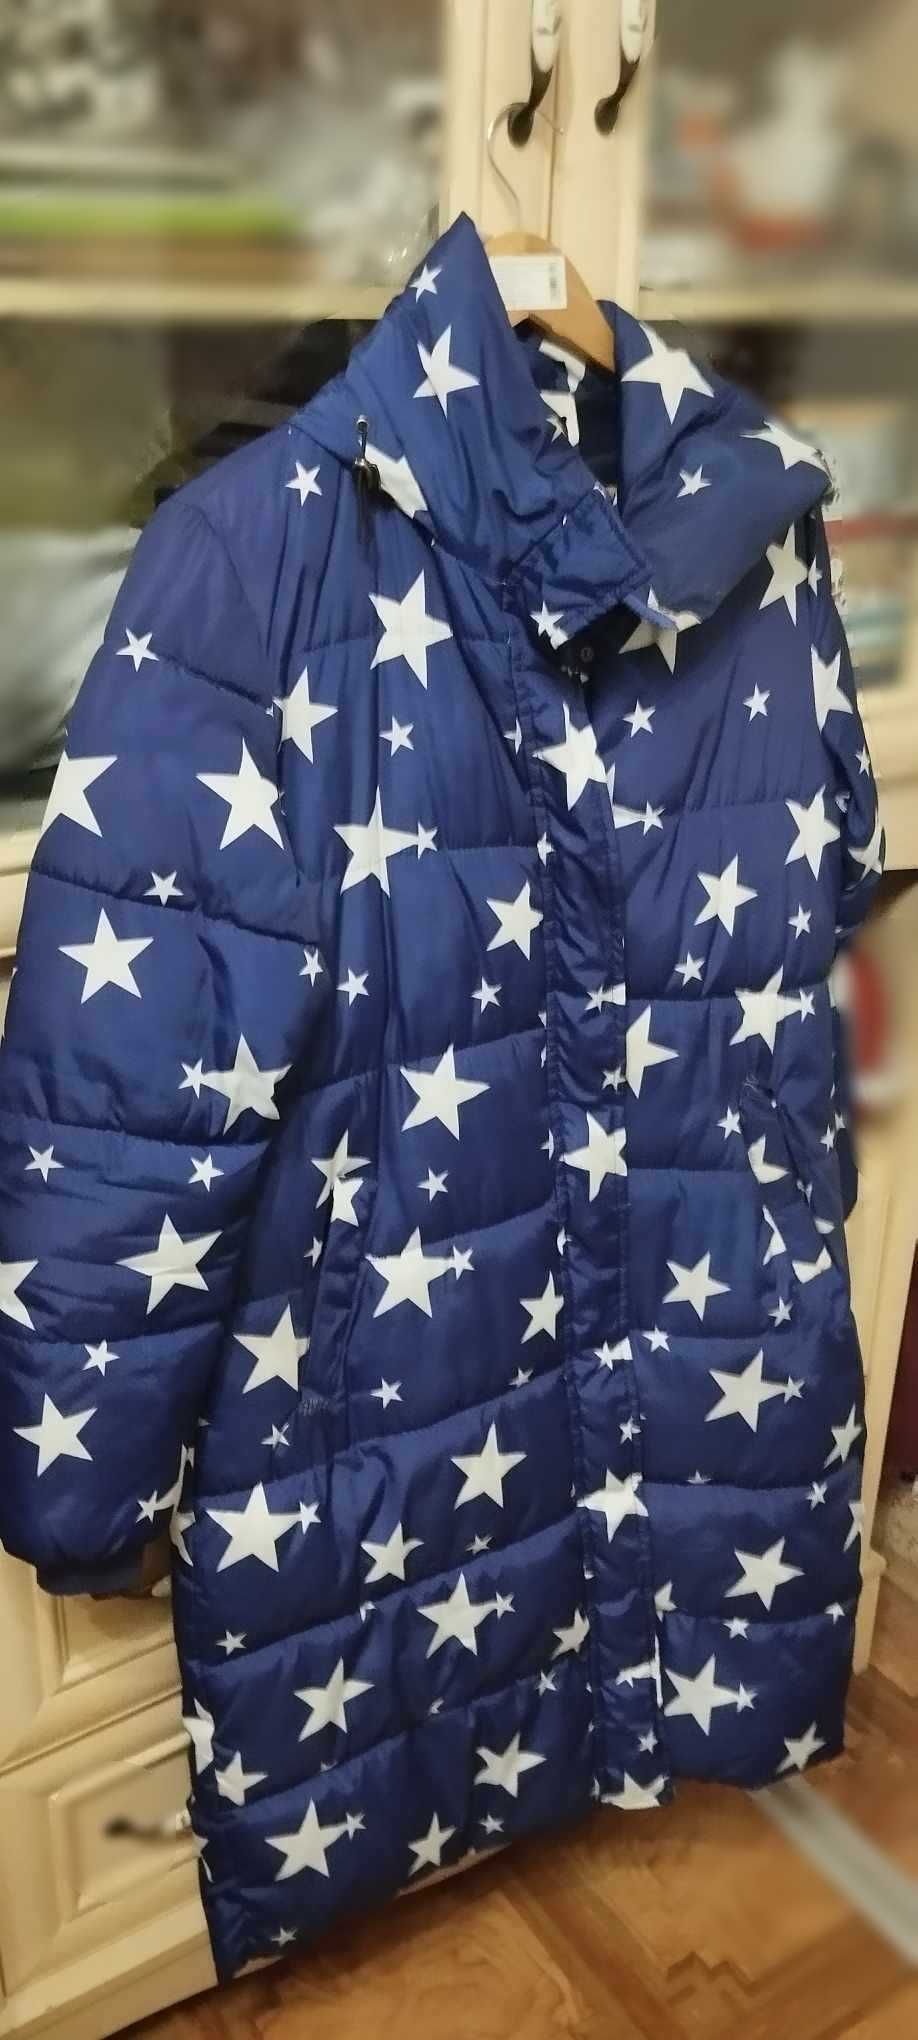 Жіноча куртка зимня синя у білу зірочку